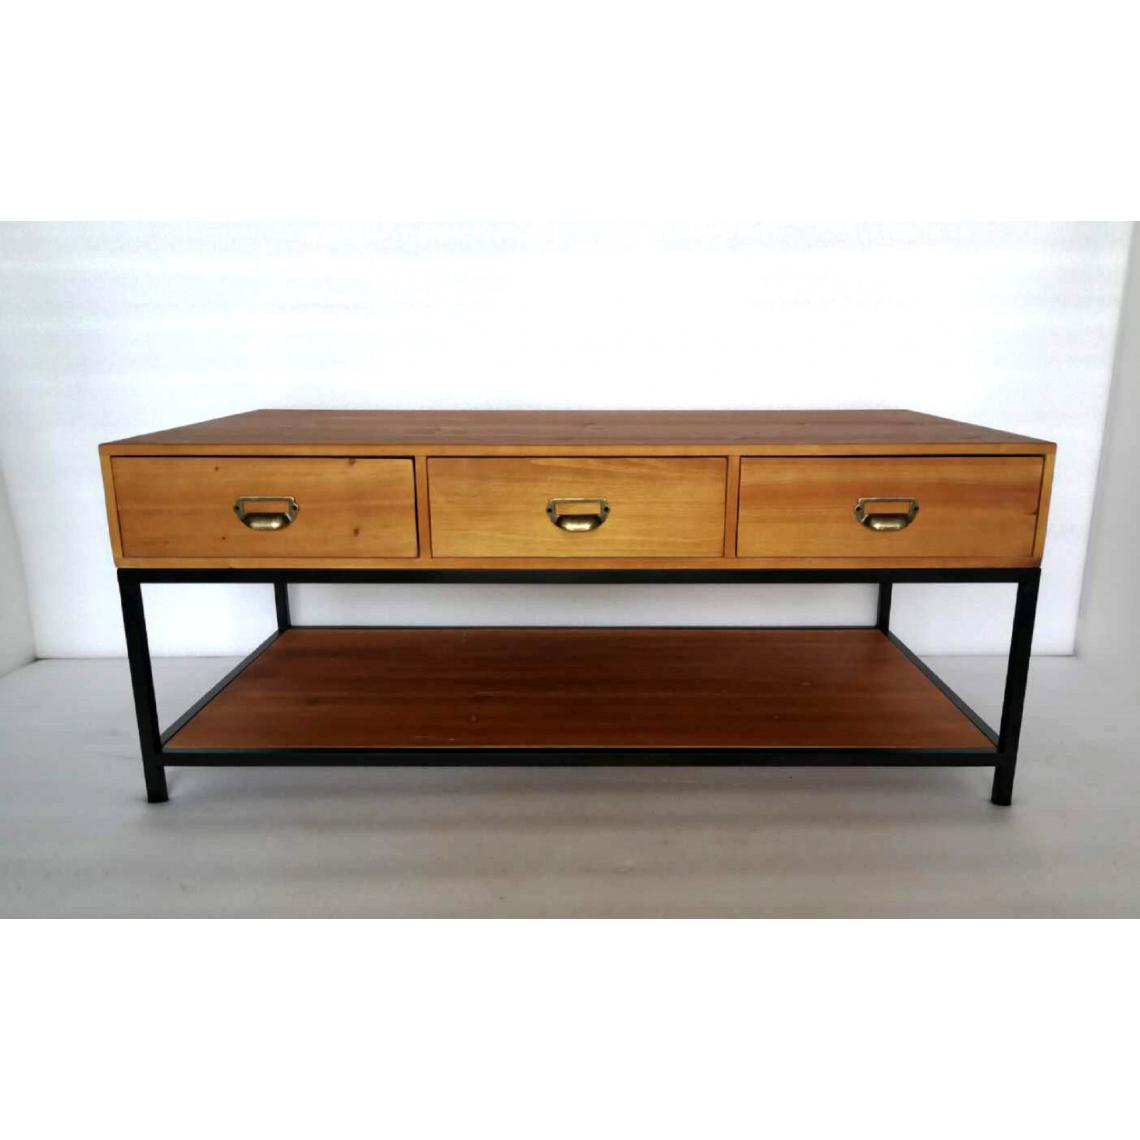 3S. x Home - Table basse industrielle bois et métal IRVIN - Tables basses